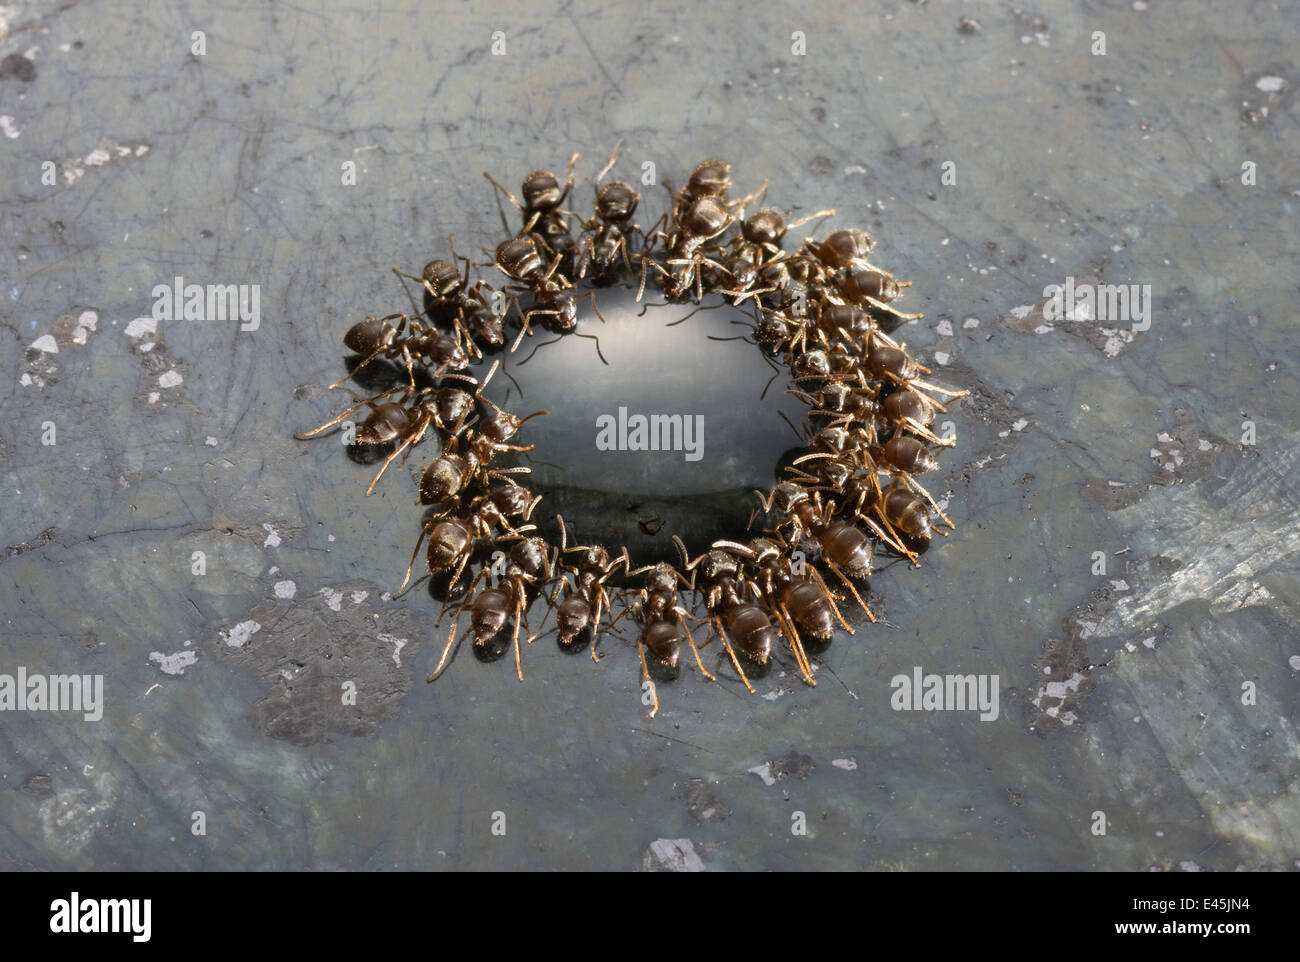 Fourmis noires jardin} {Lasius niger se nourrissant de goutte d'érable sur une surface de travail en granit, UK Banque D'Images